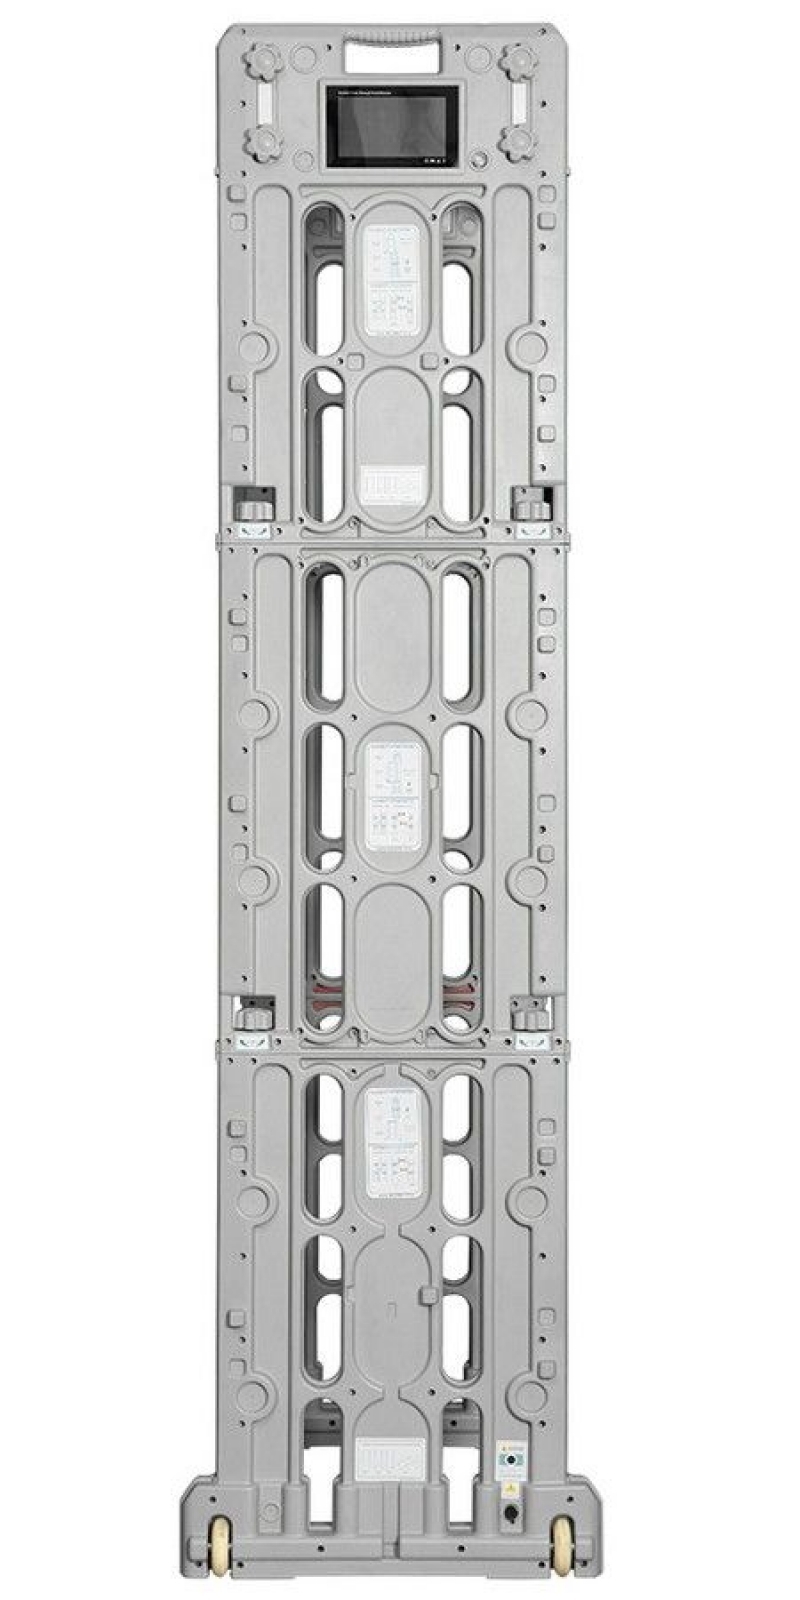 арочный металлодетектор блокпост рс z 800|1600|2400 сбр